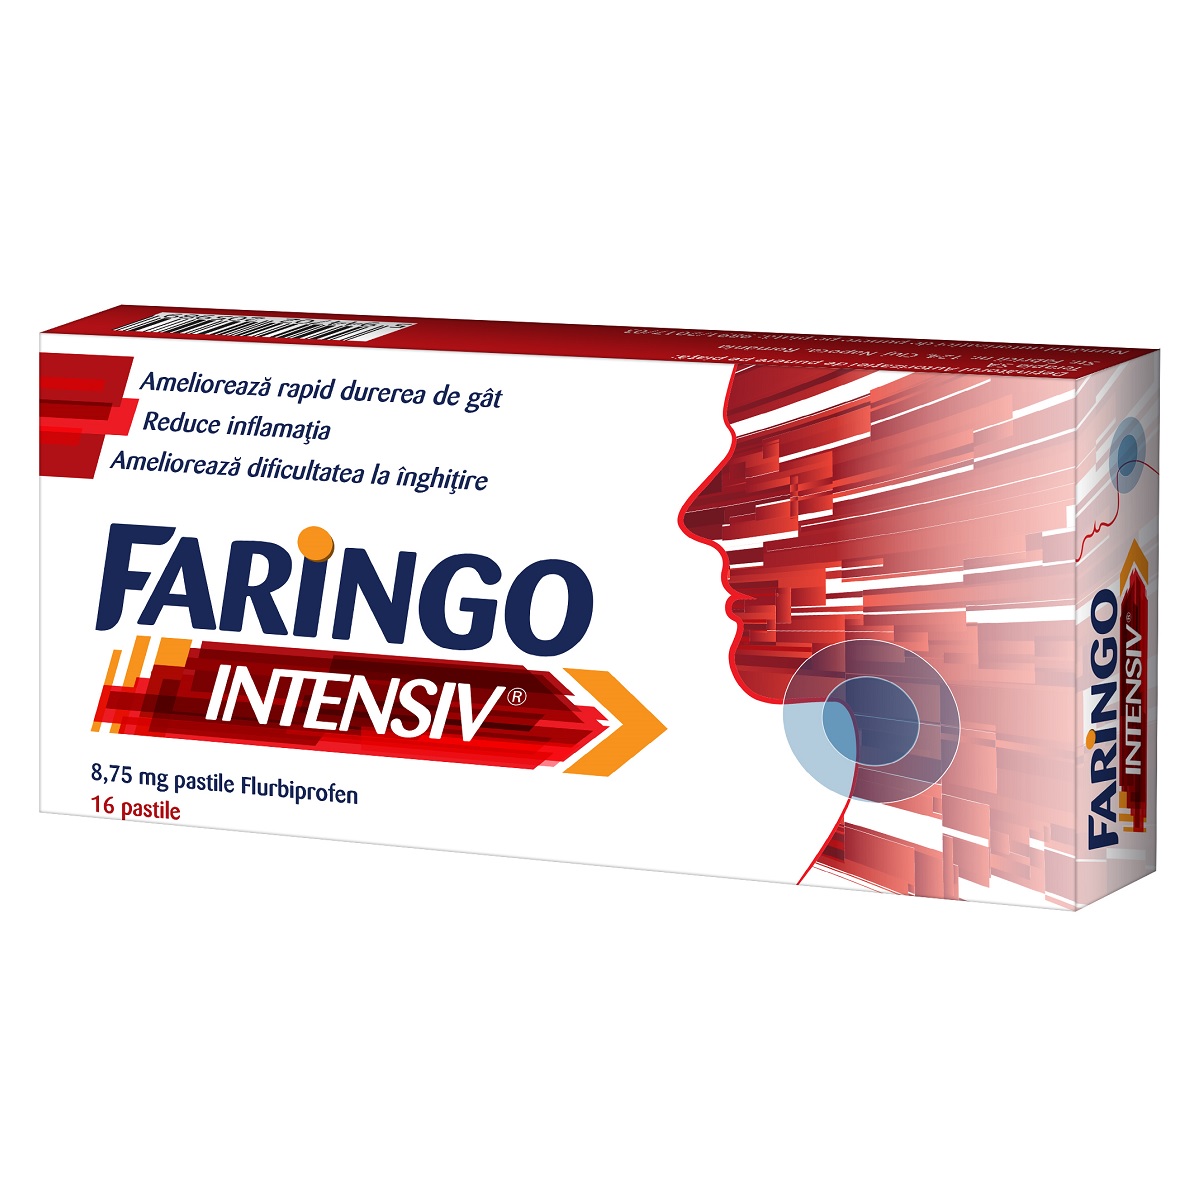 Dureri de gat - Faringo Intensiv 8,75 mg,16 pastile, Terapia, sinapis.ro